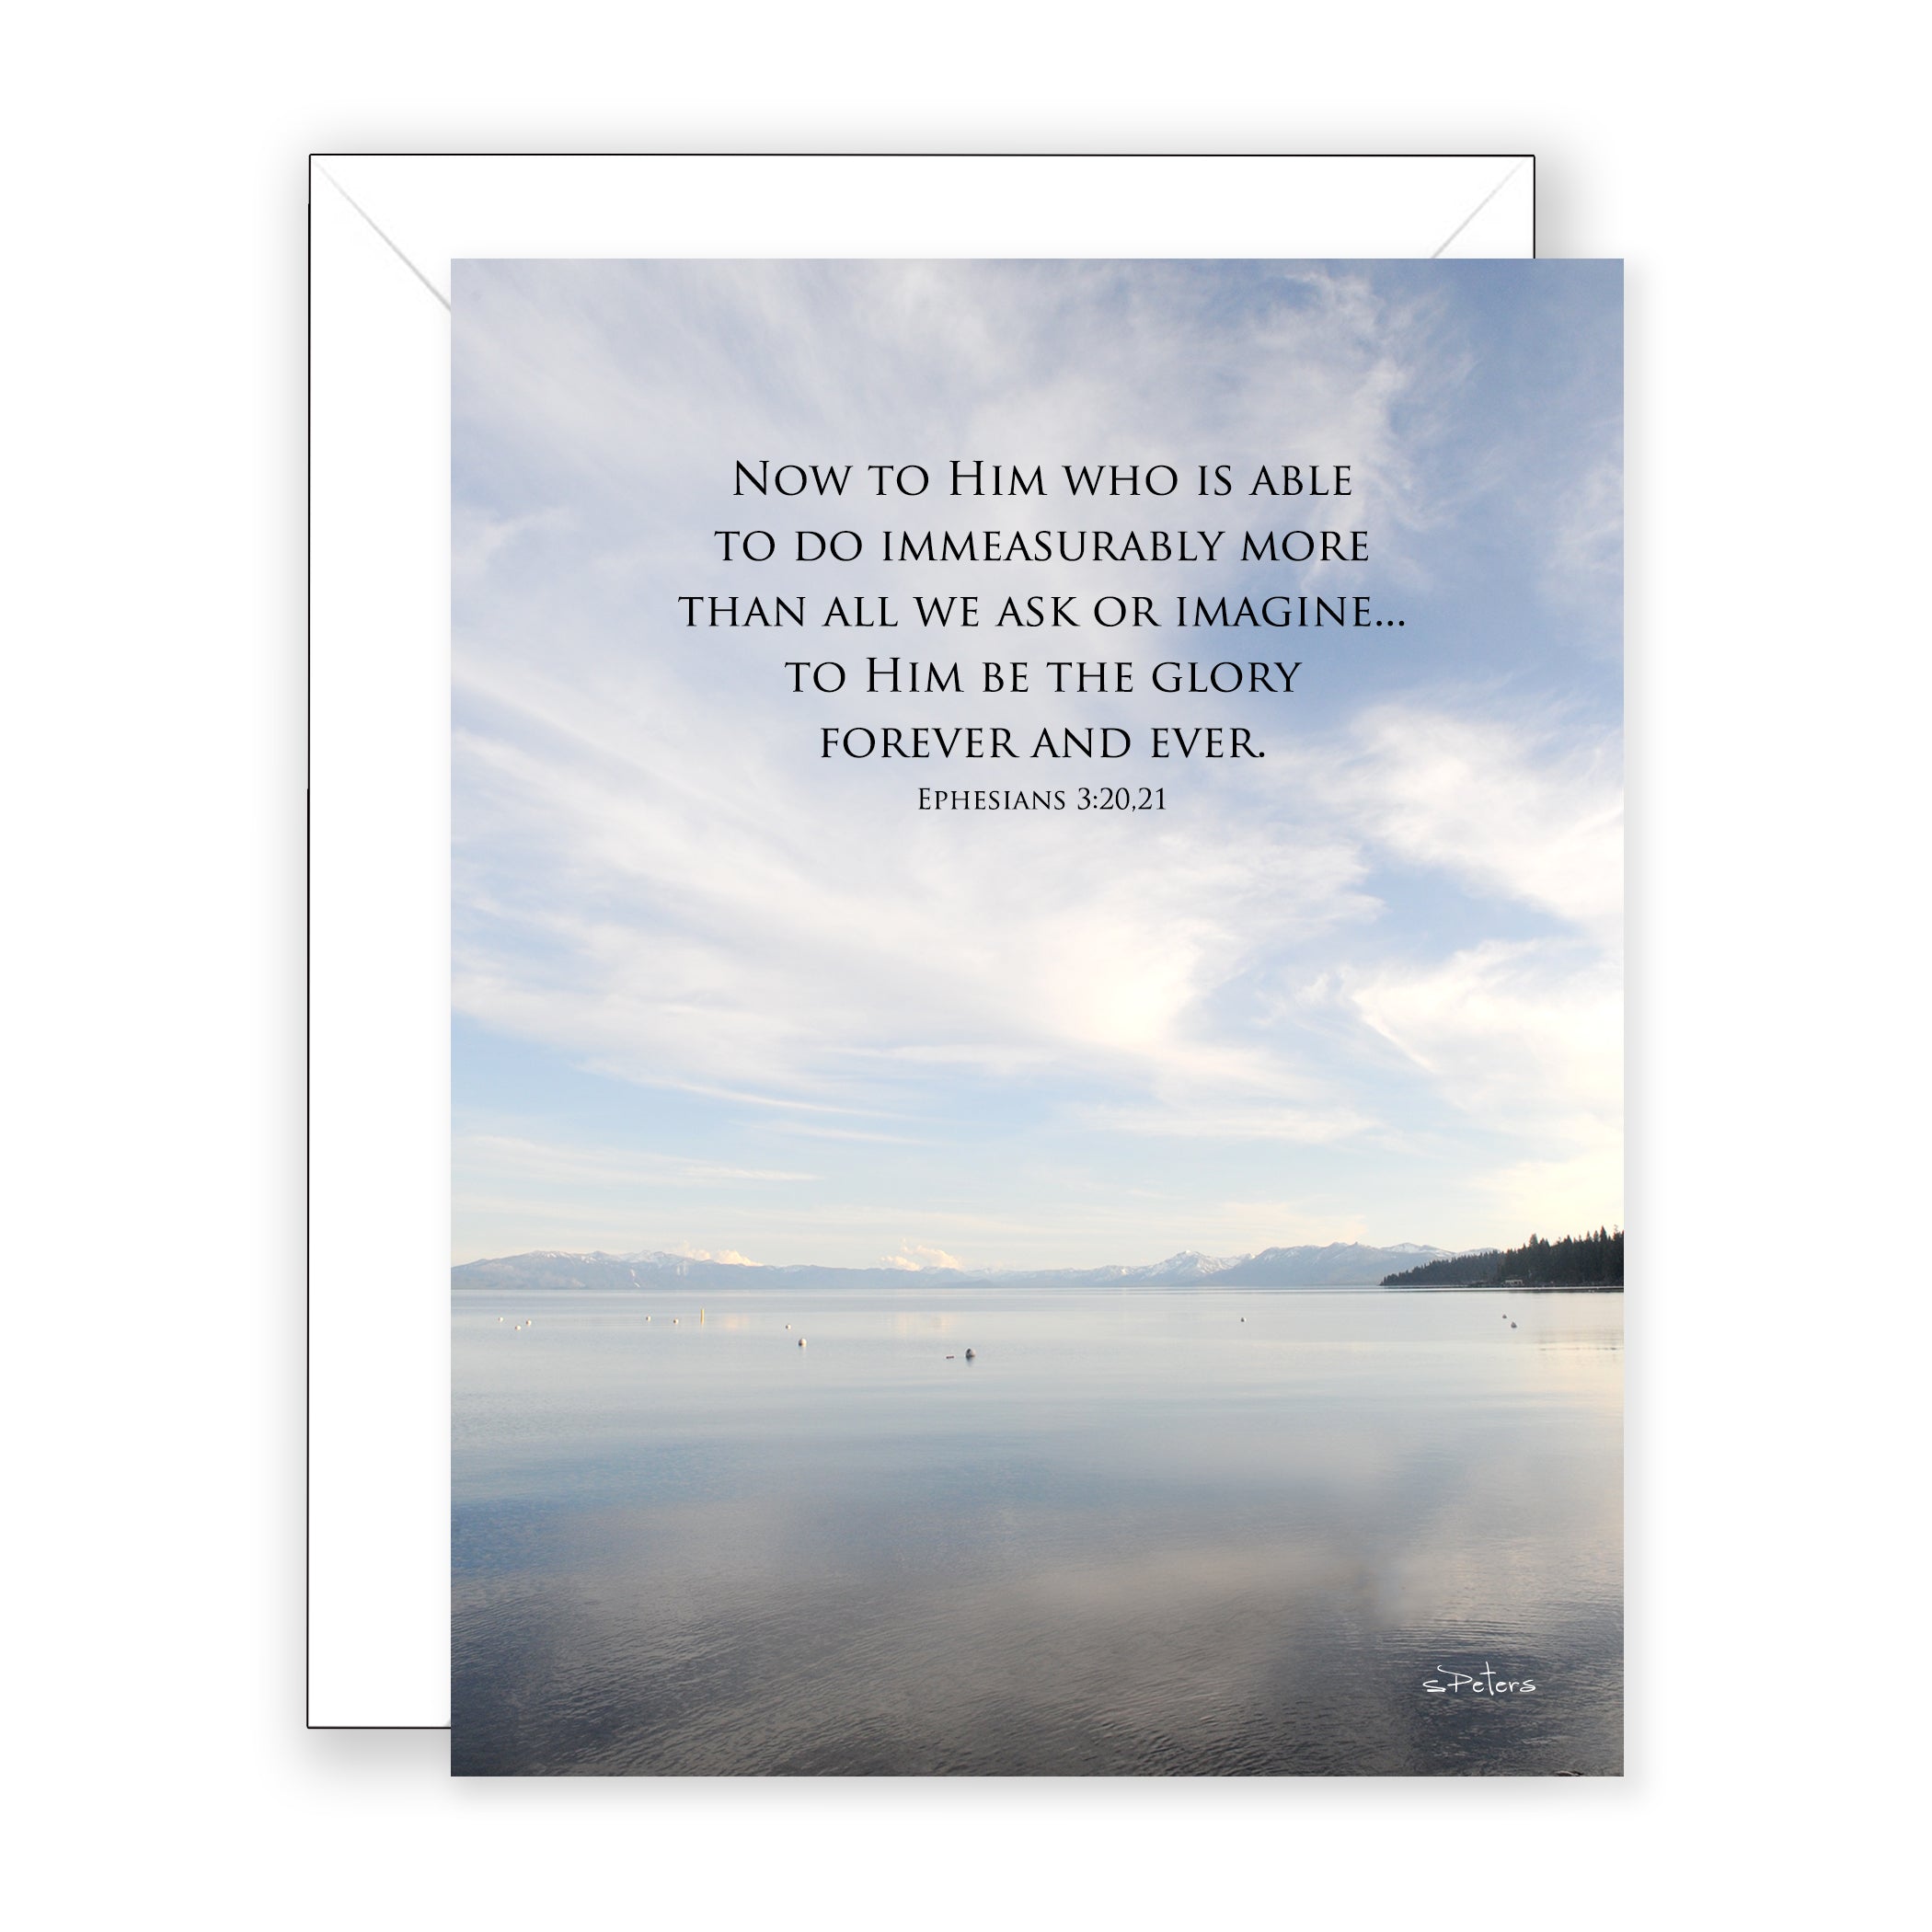 Tahoe Sky (Ephesians 3:20,21) - Encouragement Card (Blank)